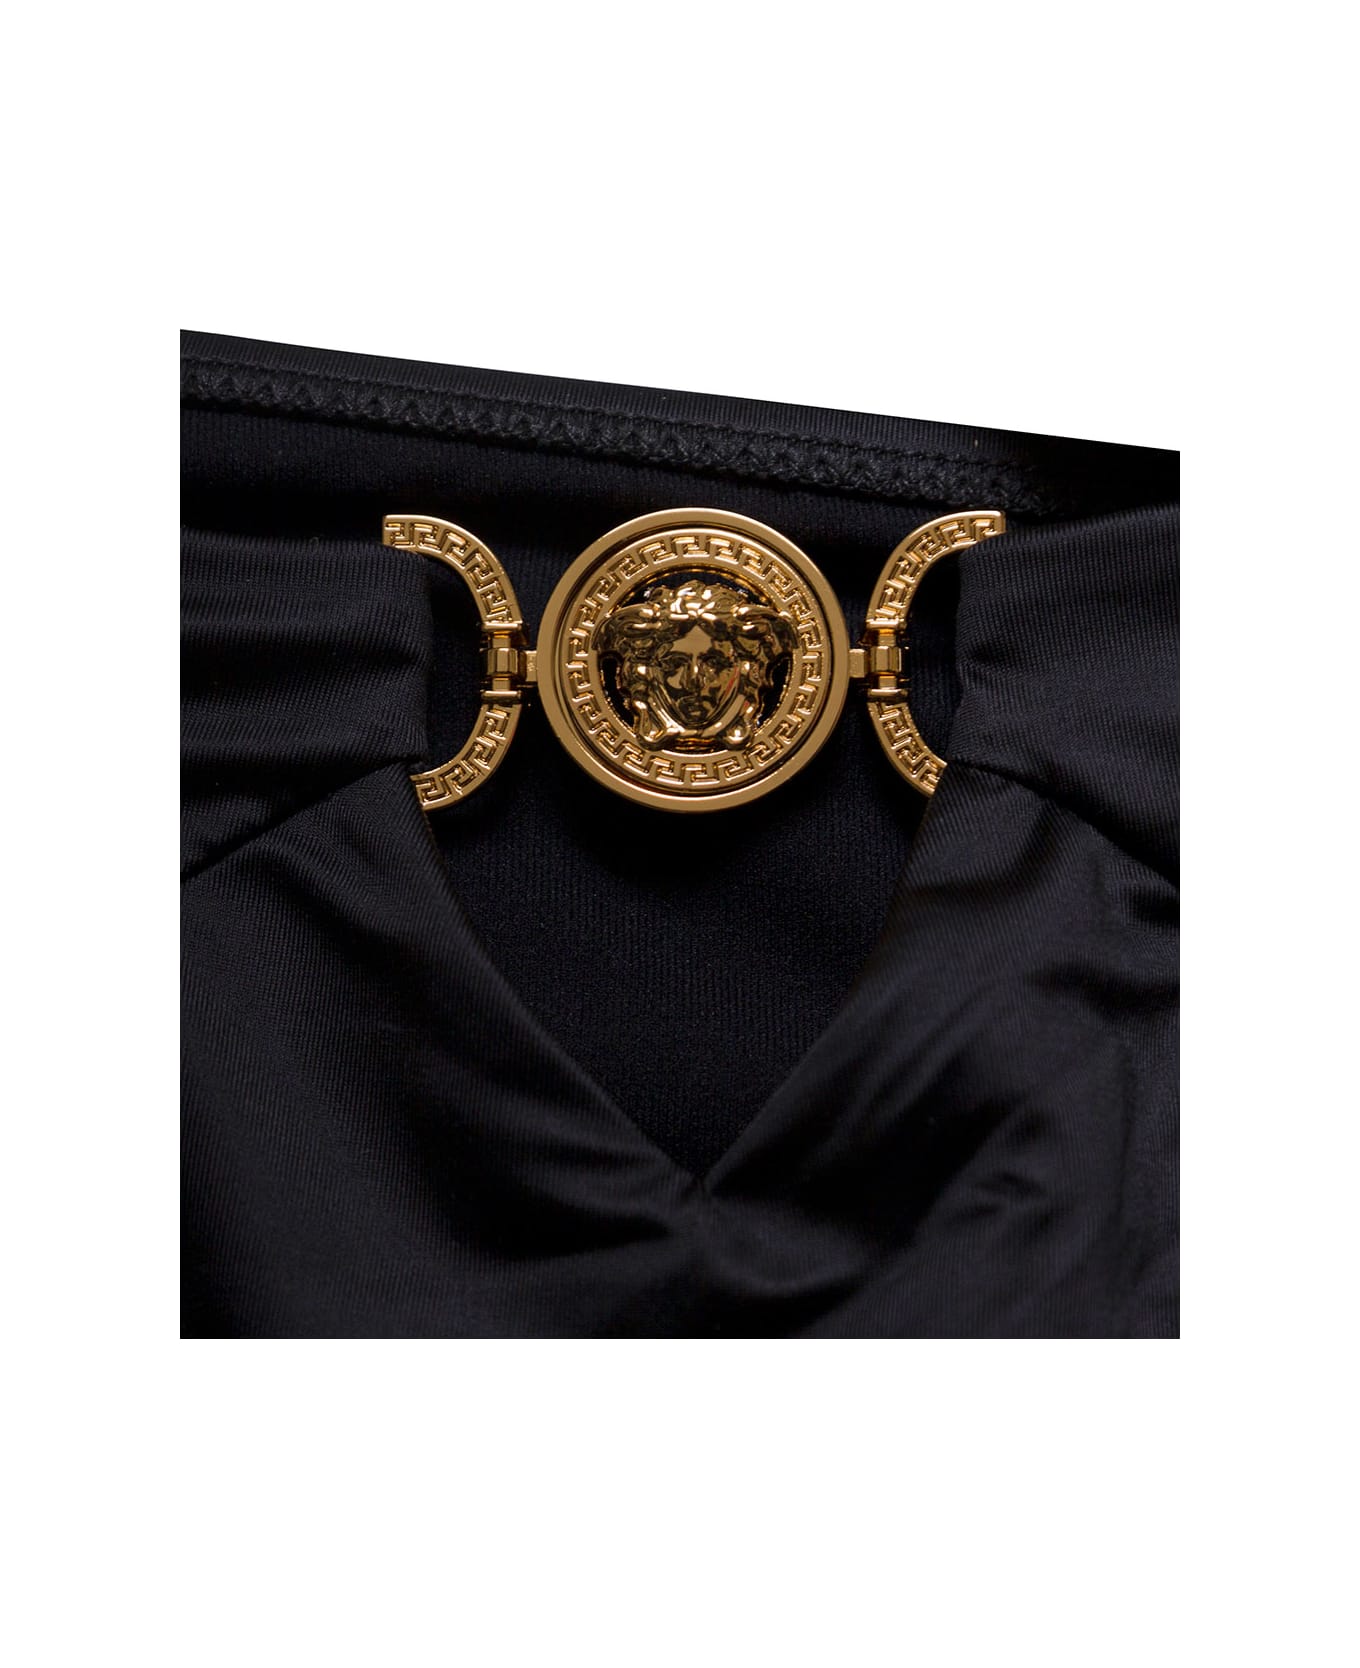 Versace Black Tie-fastening One-piece With Medusa Golden Detail In Polyammde Woman - Black